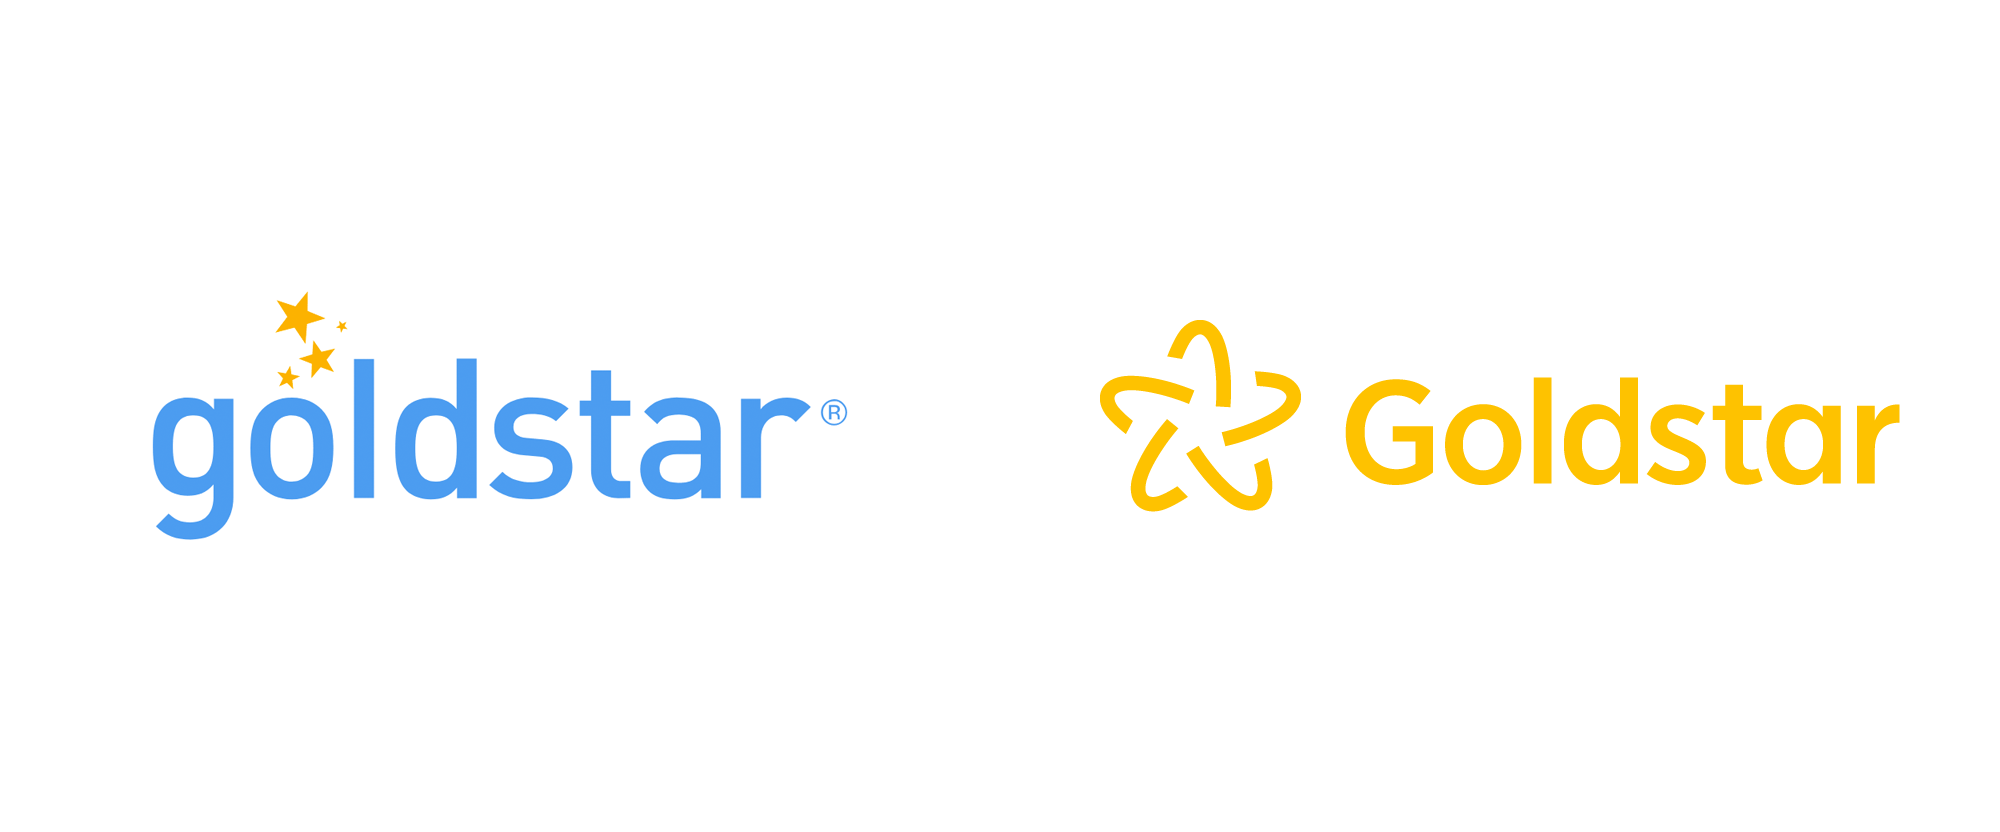 Blue and Gold Star Logo - Brand New: New Logo for Goldstar